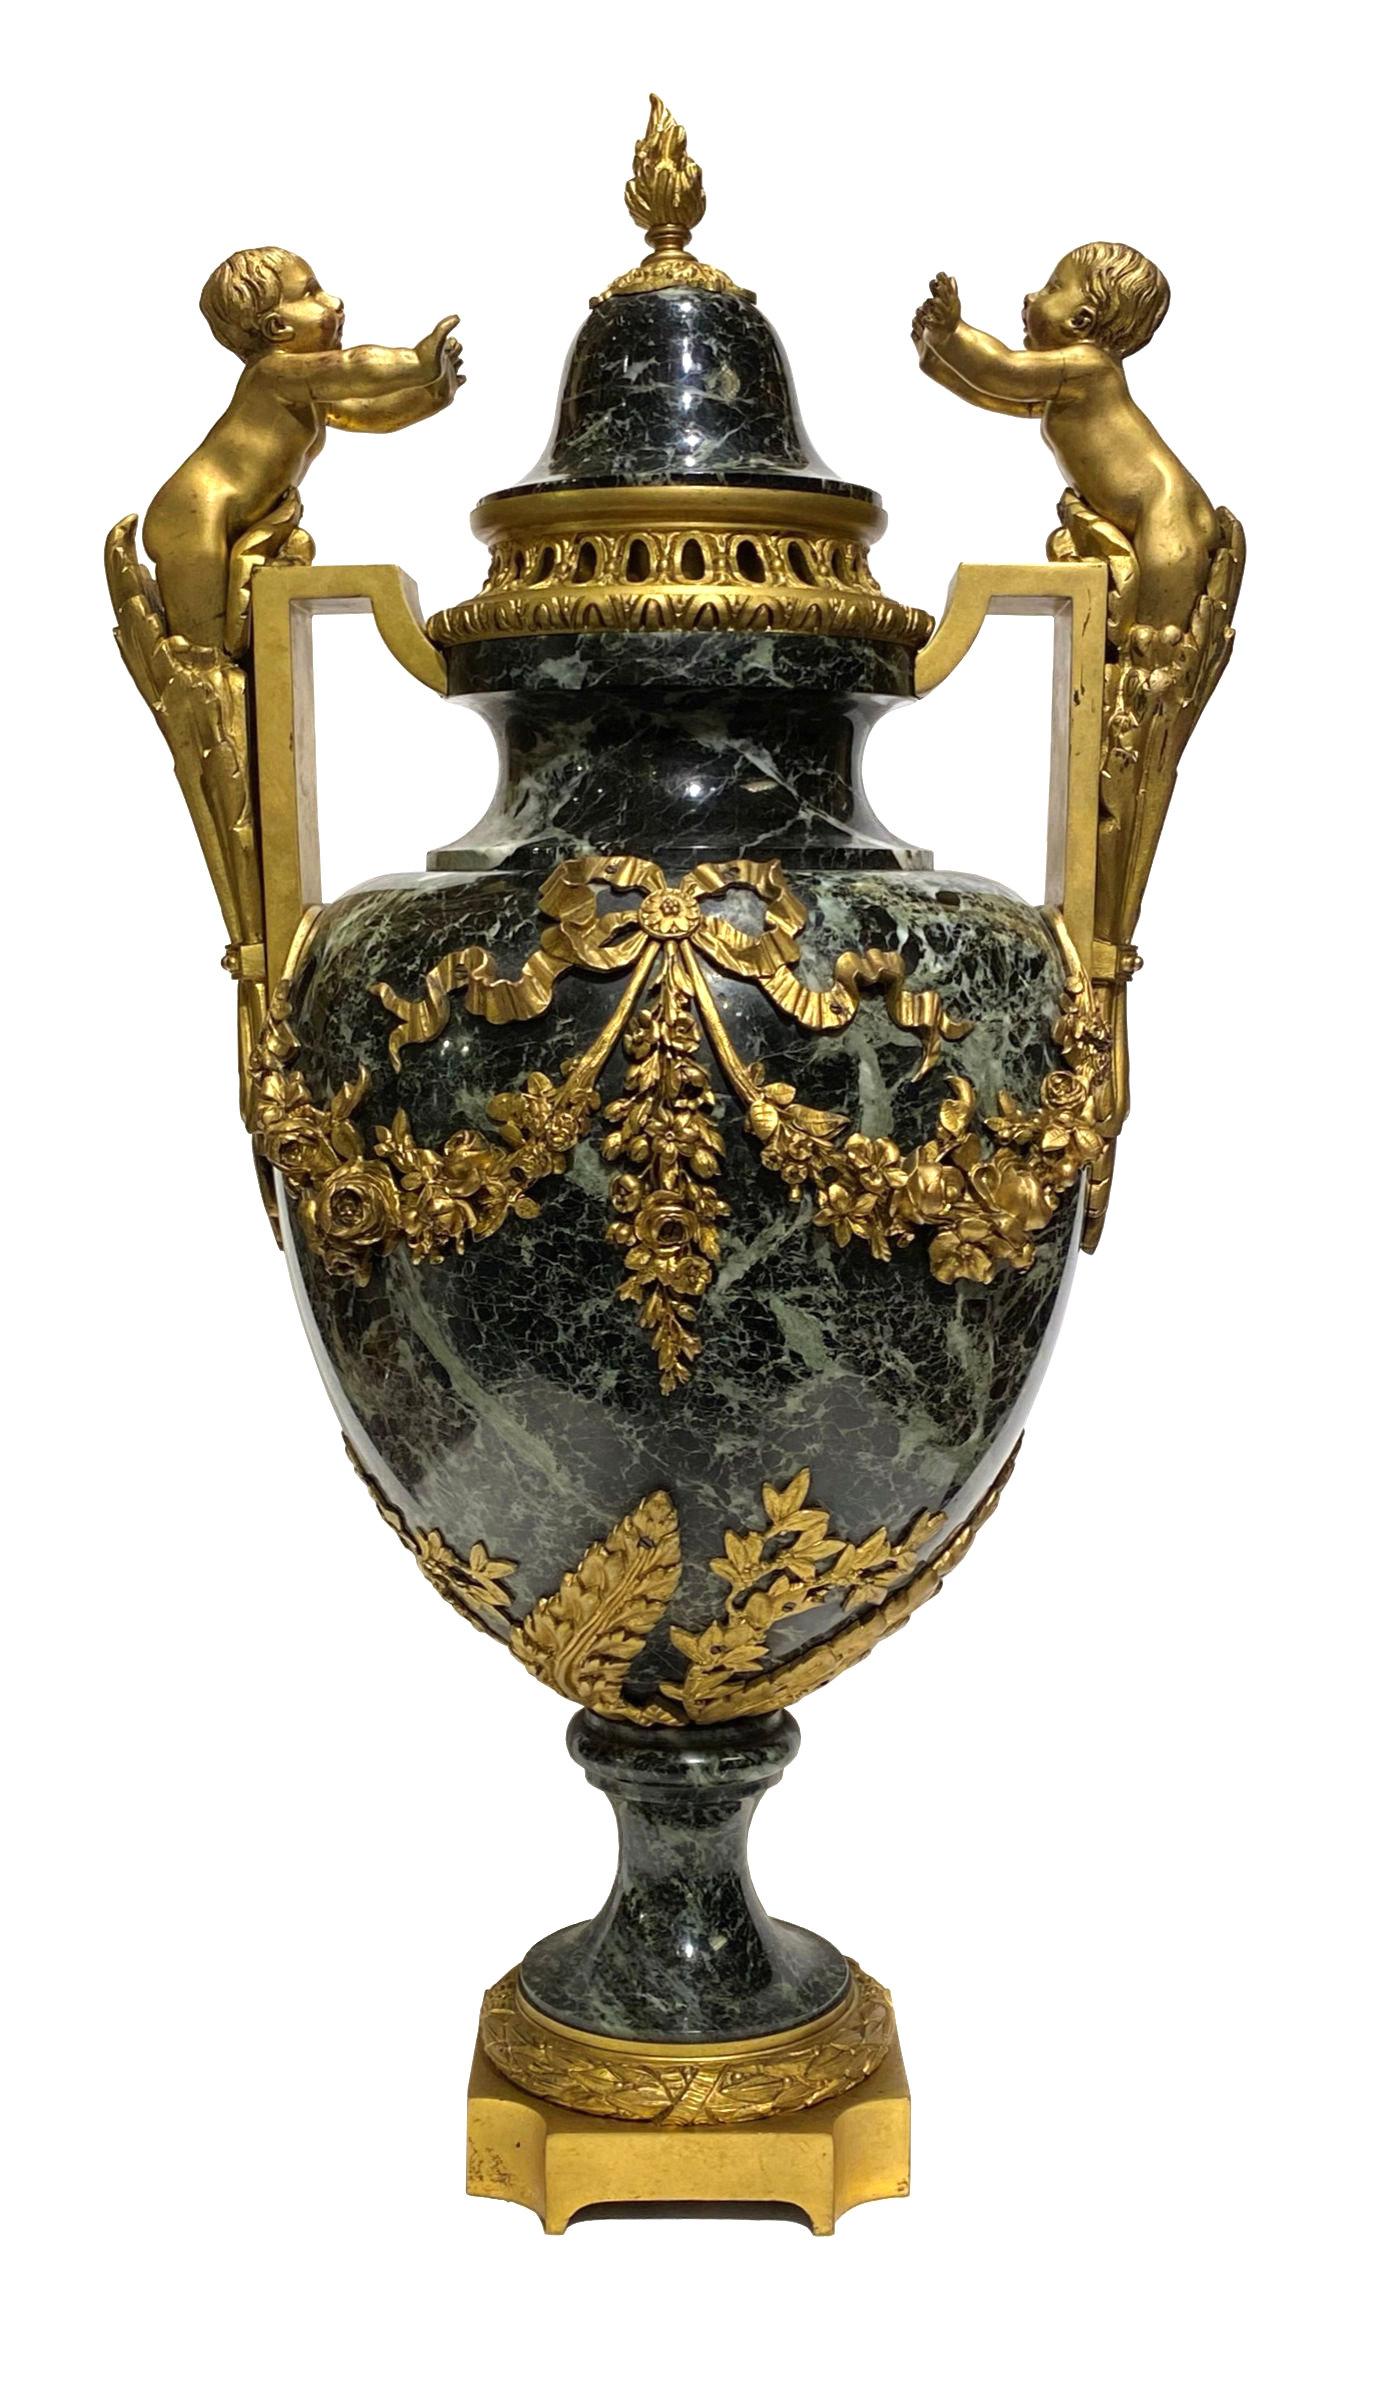 Paire d'urnes en marbre de style Louis XVI, de grande taille et de très belle qualité, datant du XIXe siècle, montées en bronze doré et ornées de chérubins.